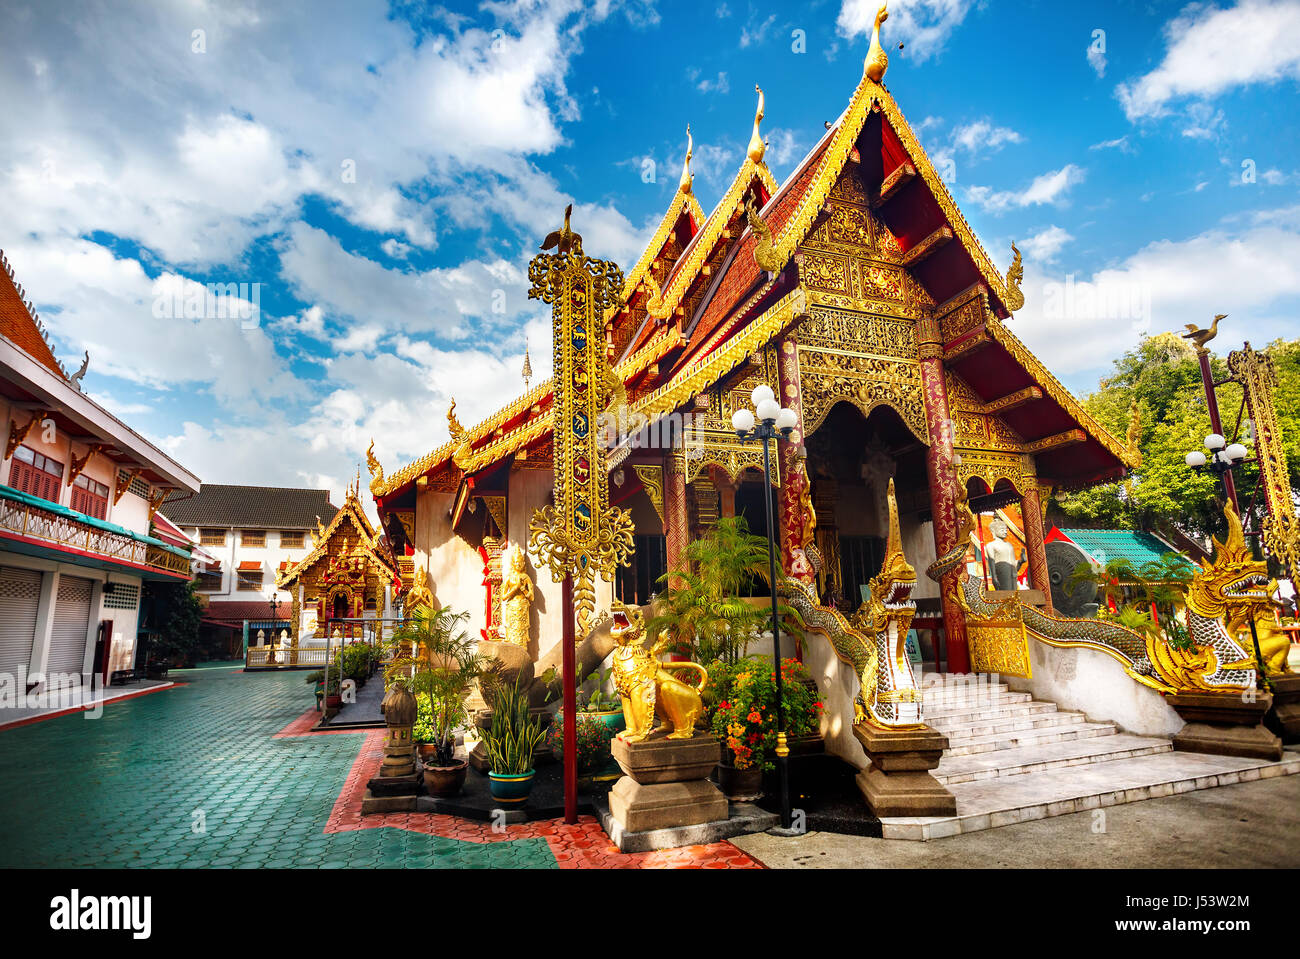 La pagoda dorata con dragon nel monastero buddista di Chiang Rai, Thailandia Foto Stock